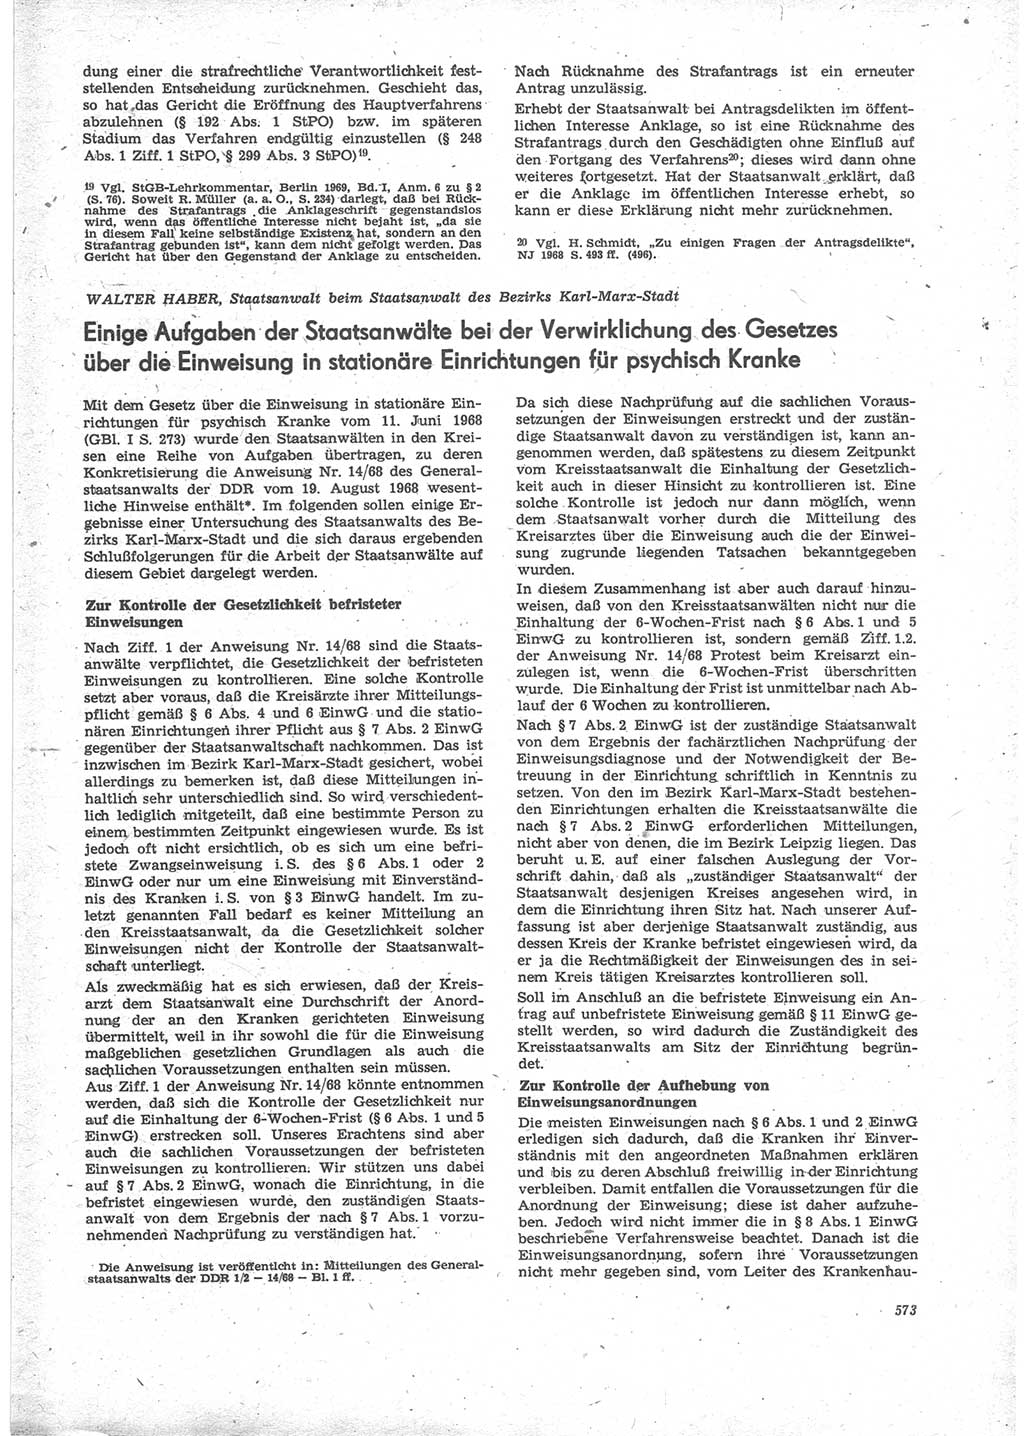 Neue Justiz (NJ), Zeitschrift für Recht und Rechtswissenschaft [Deutsche Demokratische Republik (DDR)], 24. Jahrgang 1970, Seite 573 (NJ DDR 1970, S. 573)